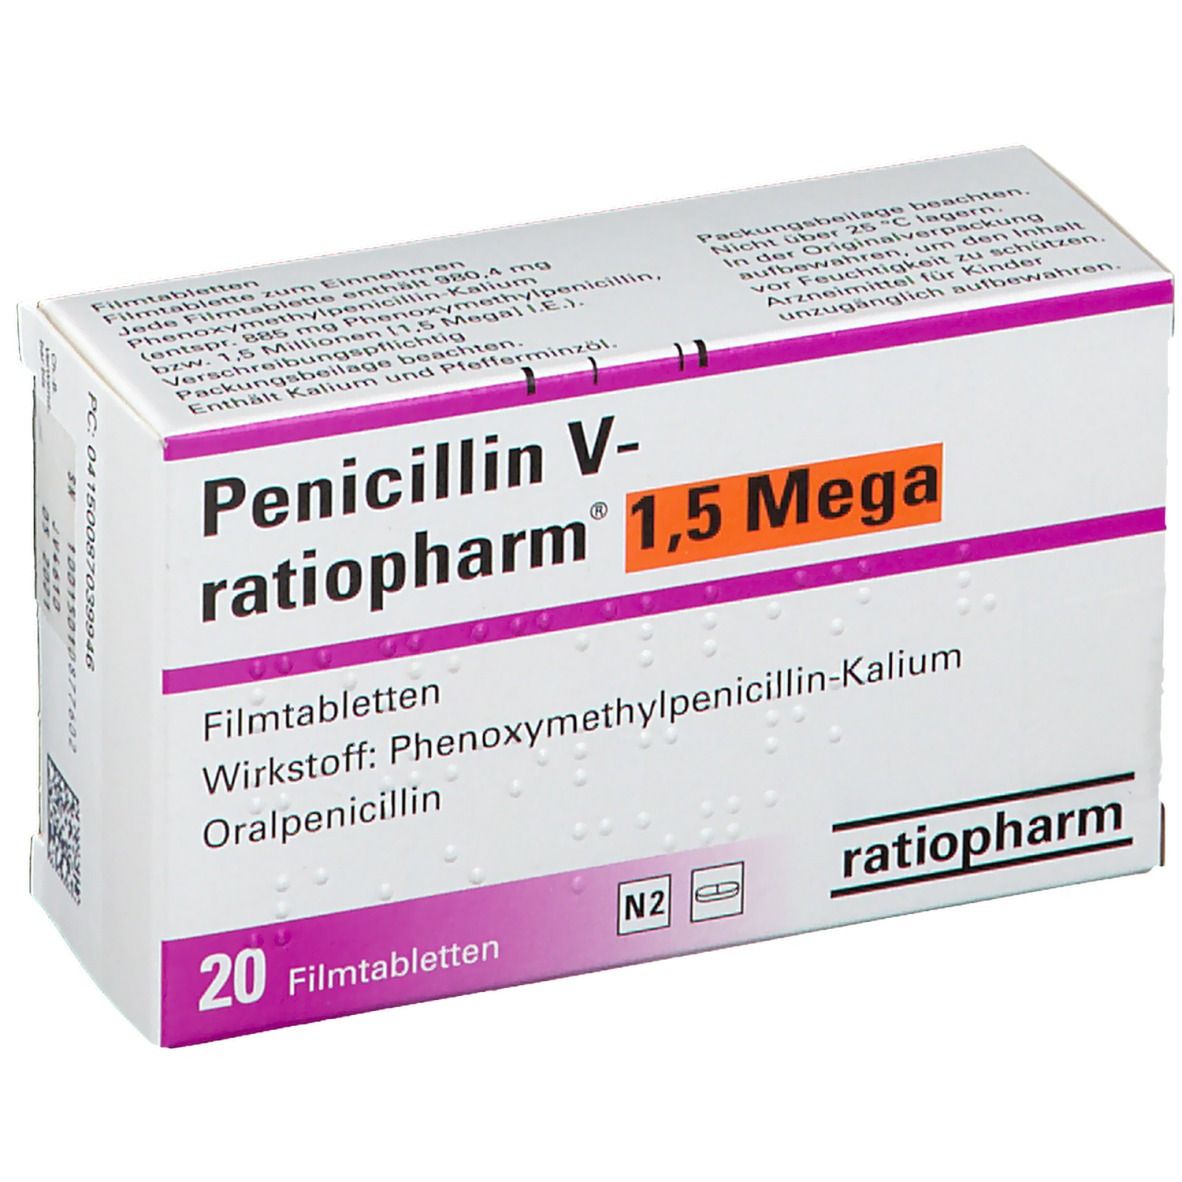 V 5 mega nebenwirkungen 1 penicillin stada Penicillin V